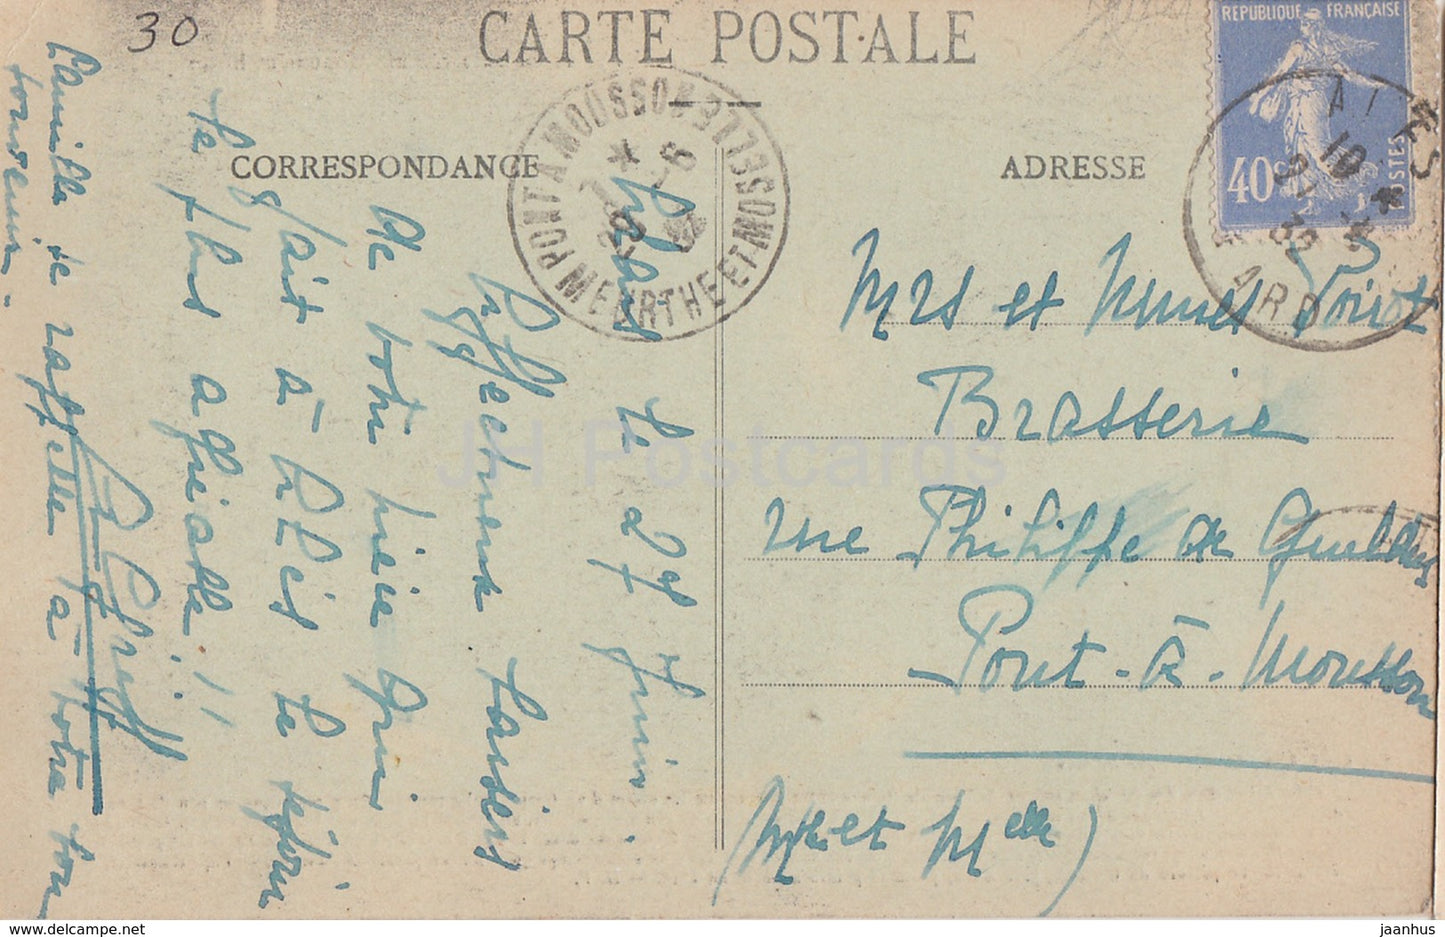 Alais - Cathédrale St Jean - cathédrale - carte postale ancienne - 1932 - France - occasion